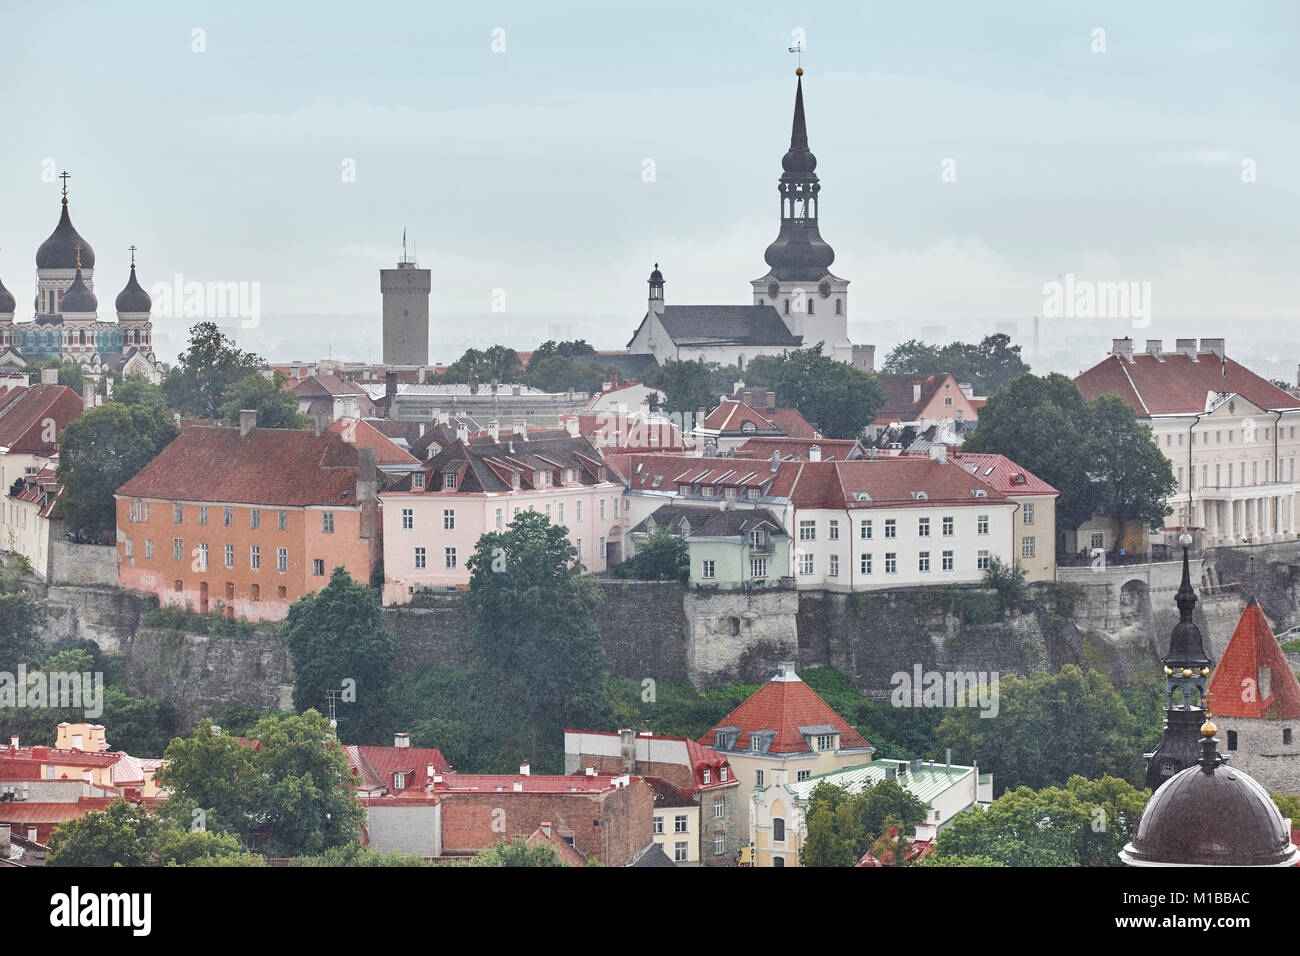 Tallinn old town cityscape view. Tourism landmark. Estonia. Europe Stock Photo